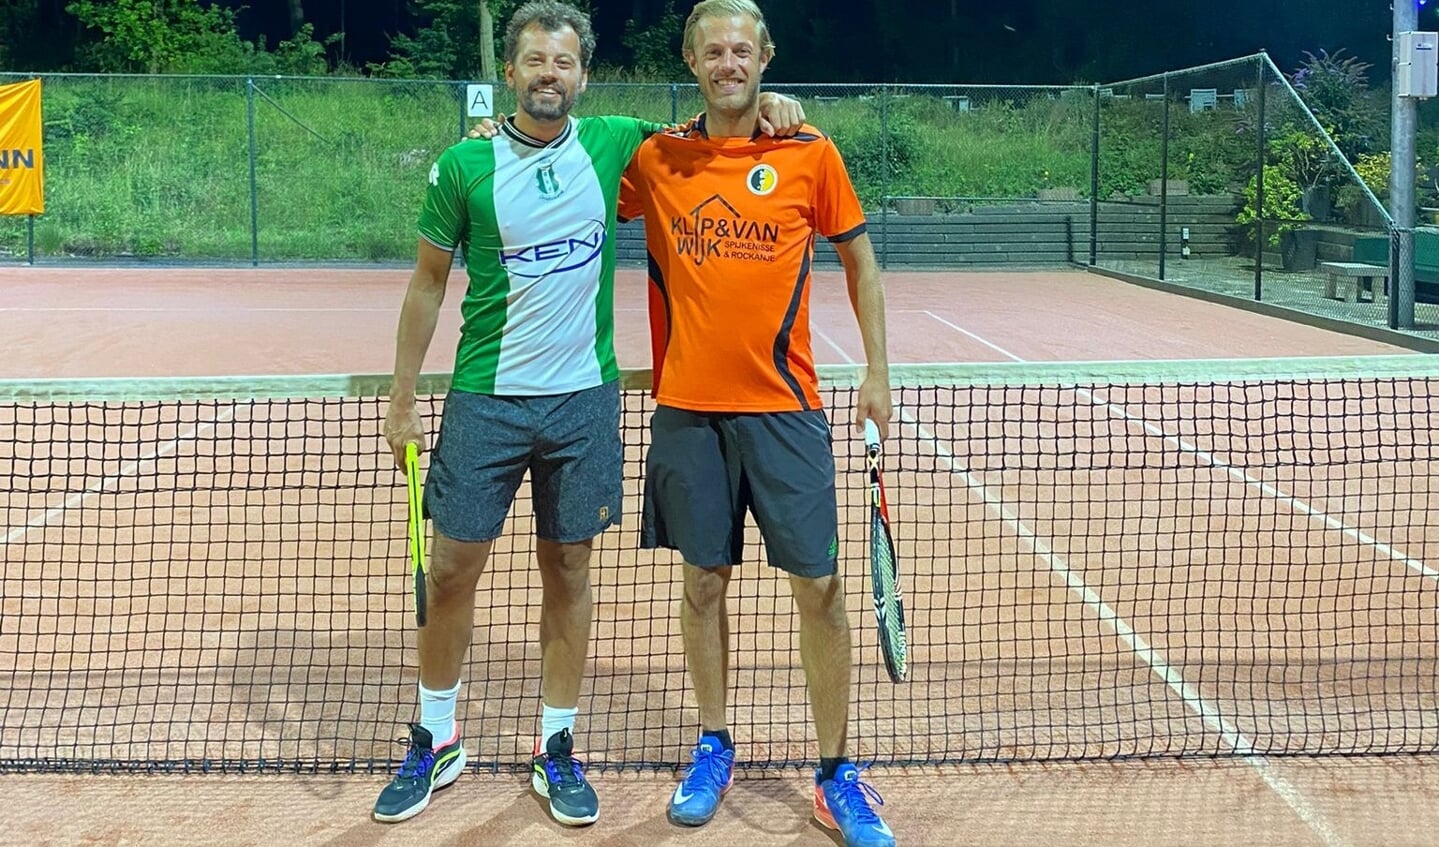 Stefan de Ruijter (l) en Pascal van Hulst waren tegenstanders op het voetbalveld, maar tennisten samen op het Badgastentoernooi. 